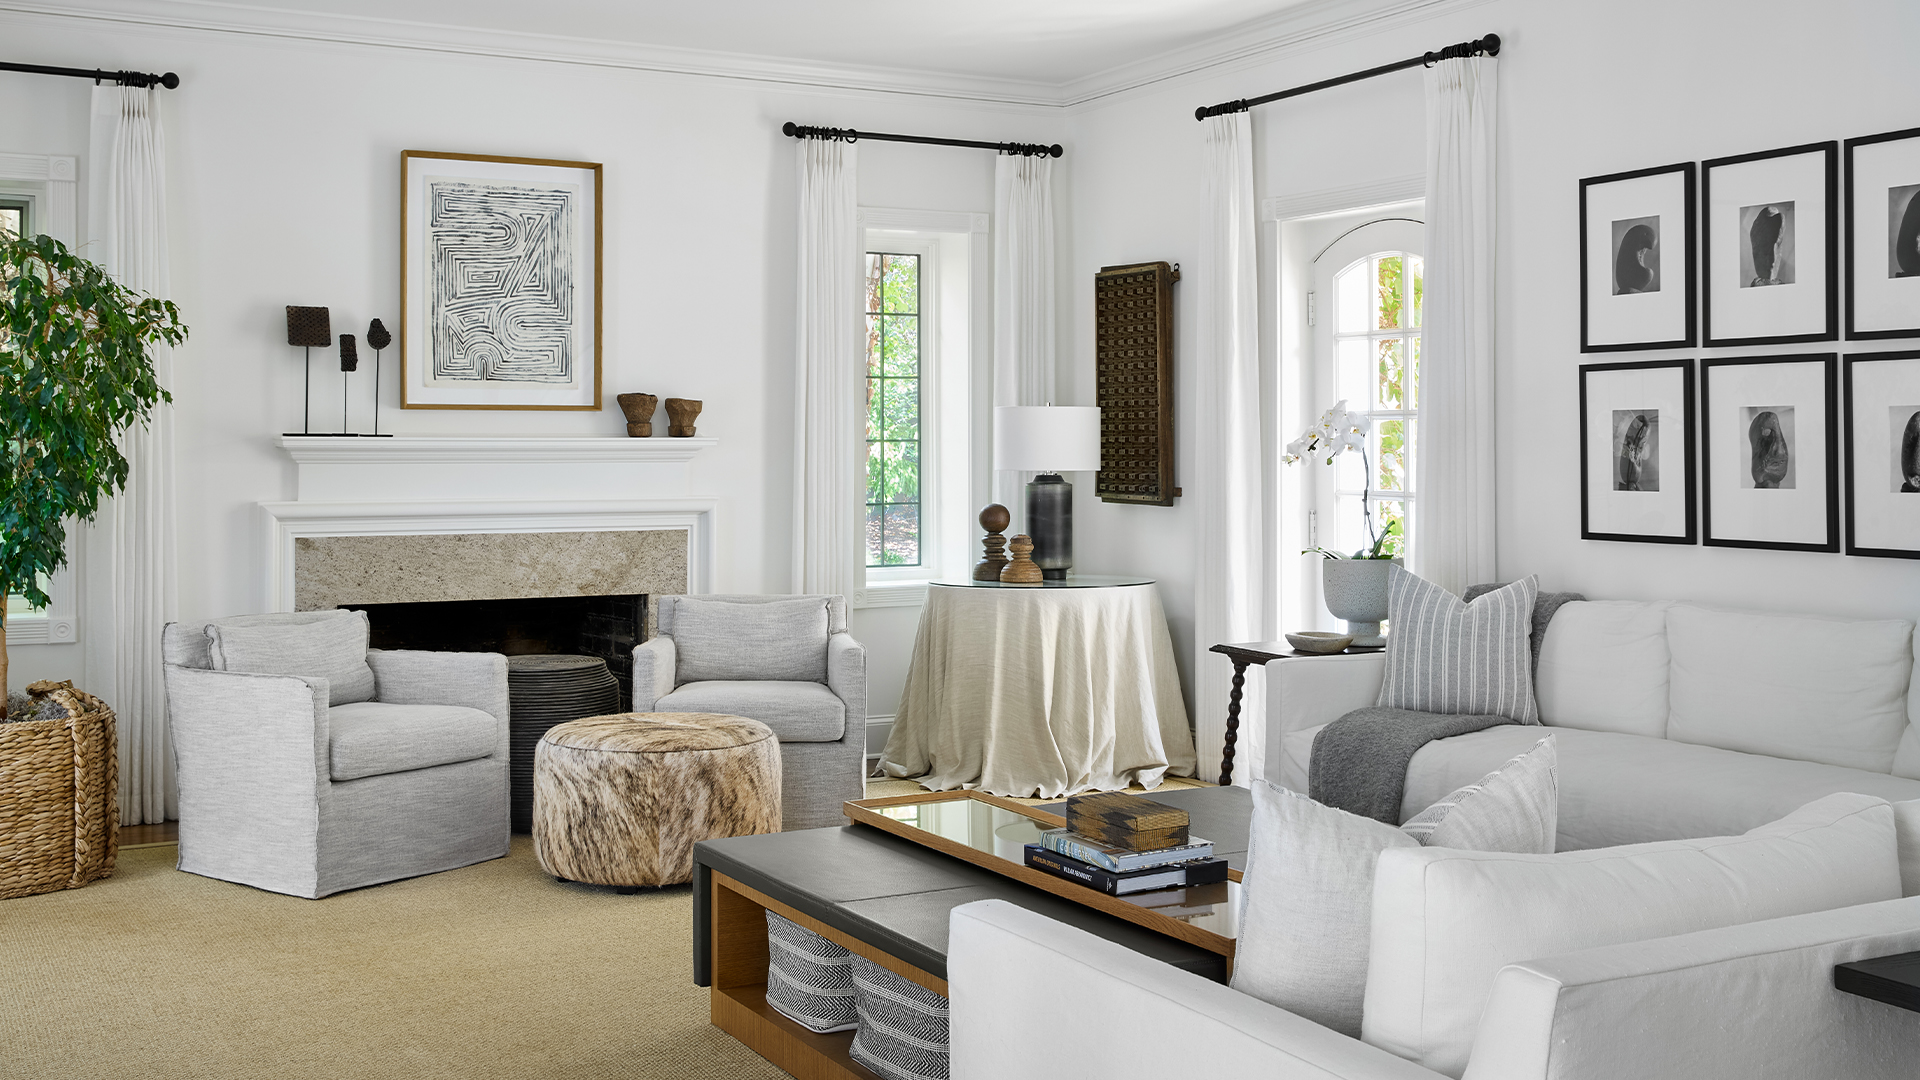 Frank-Ponterio-Interior-Design-Country-Estate-Living-Room